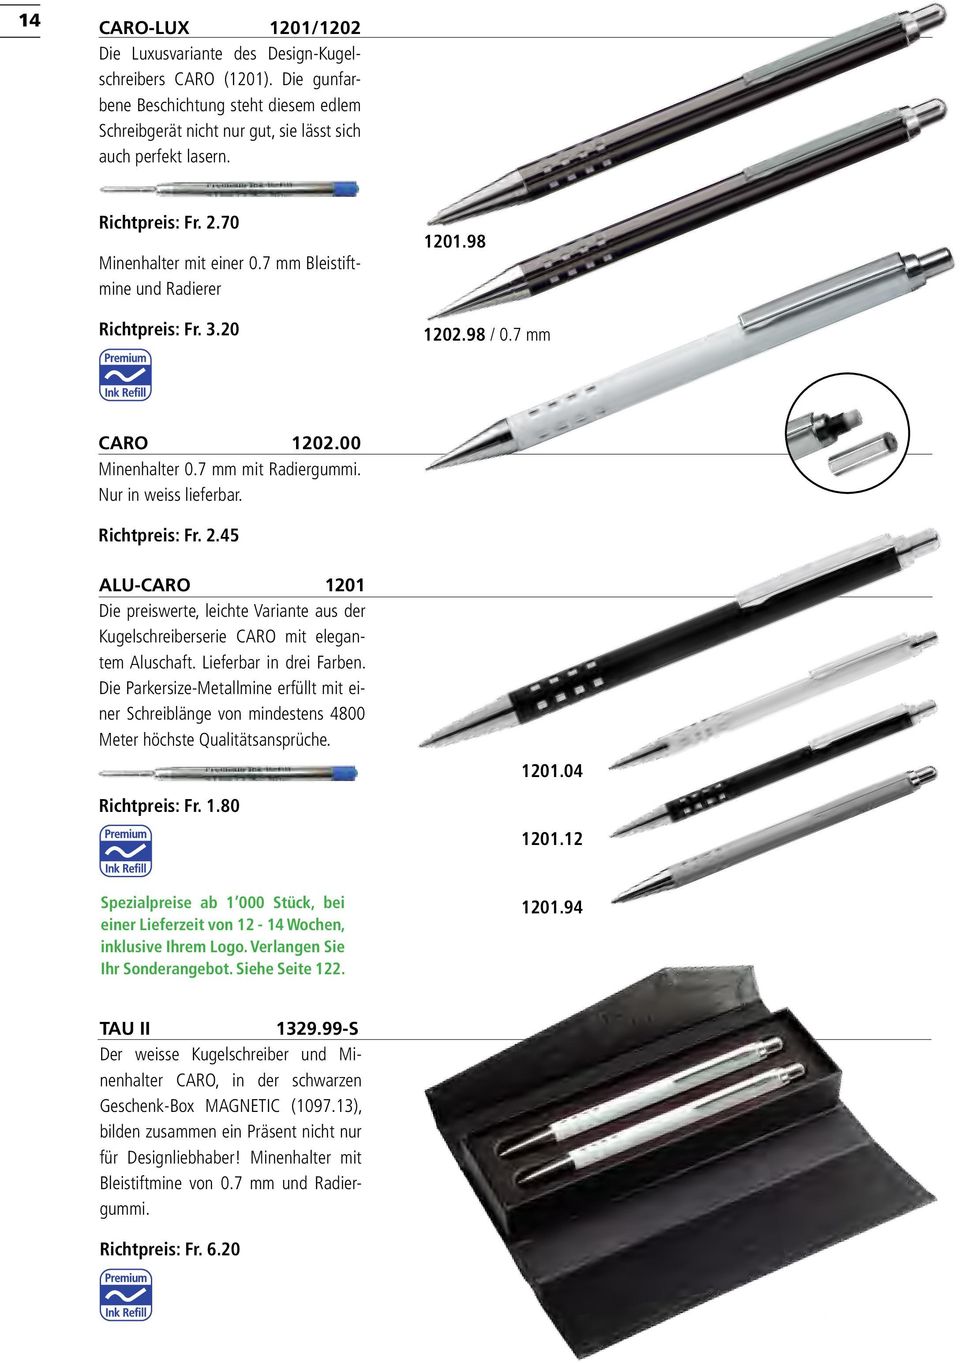 Richtpreis: Fr. 2.45 ALU-CARO 1201 Die preiswerte, leichte Variante aus der Kugelschreiberserie CARO mit elegantem Aluschaft. Lieferbar in drei Farben.